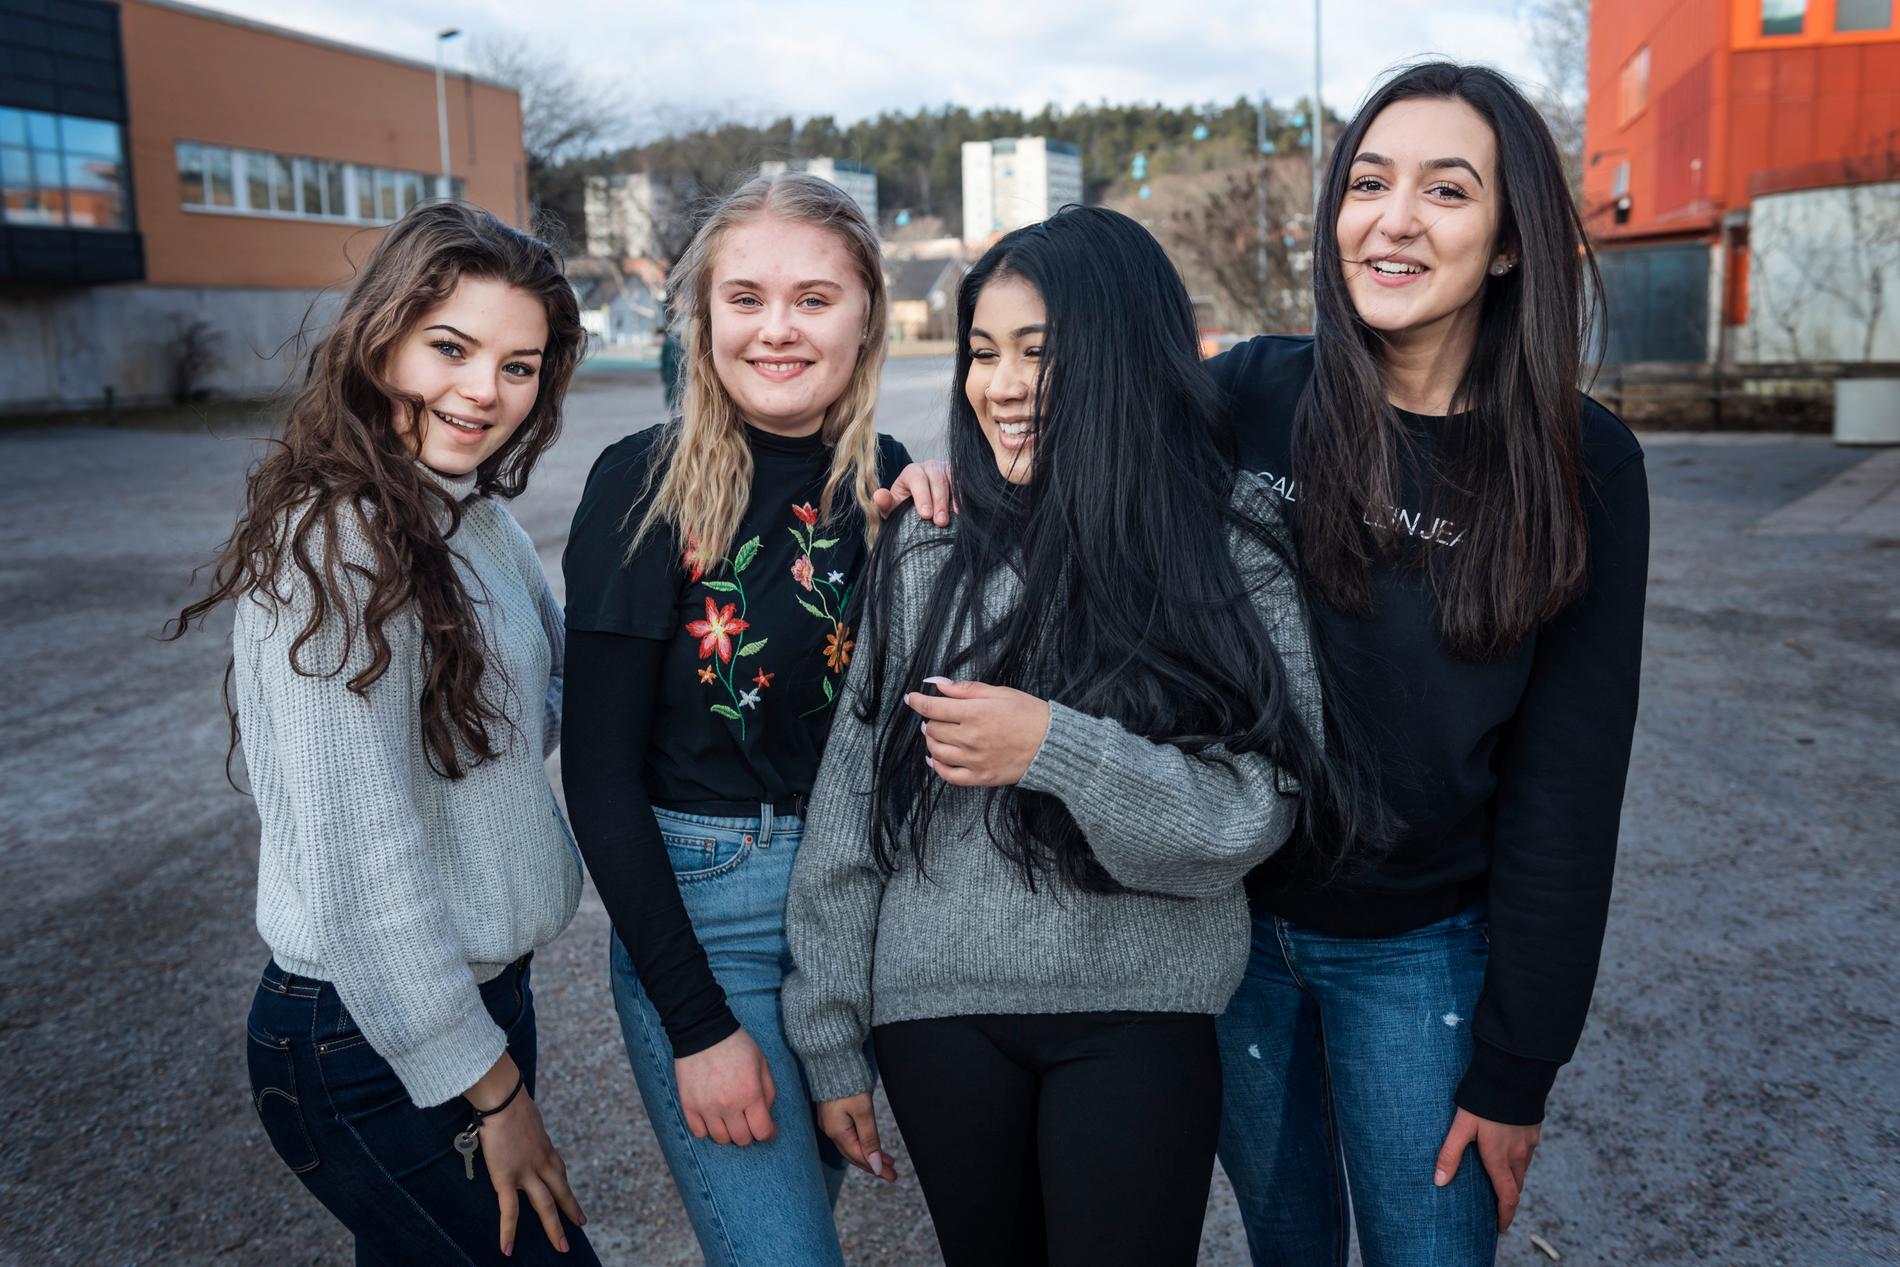 Emelie Engberg, Josefin Lublin, Tarin Islam och Marija Stevanovic från Stockholm upplever att många unga personer tycker att jämställdhetsfrågan är viktig i dag.